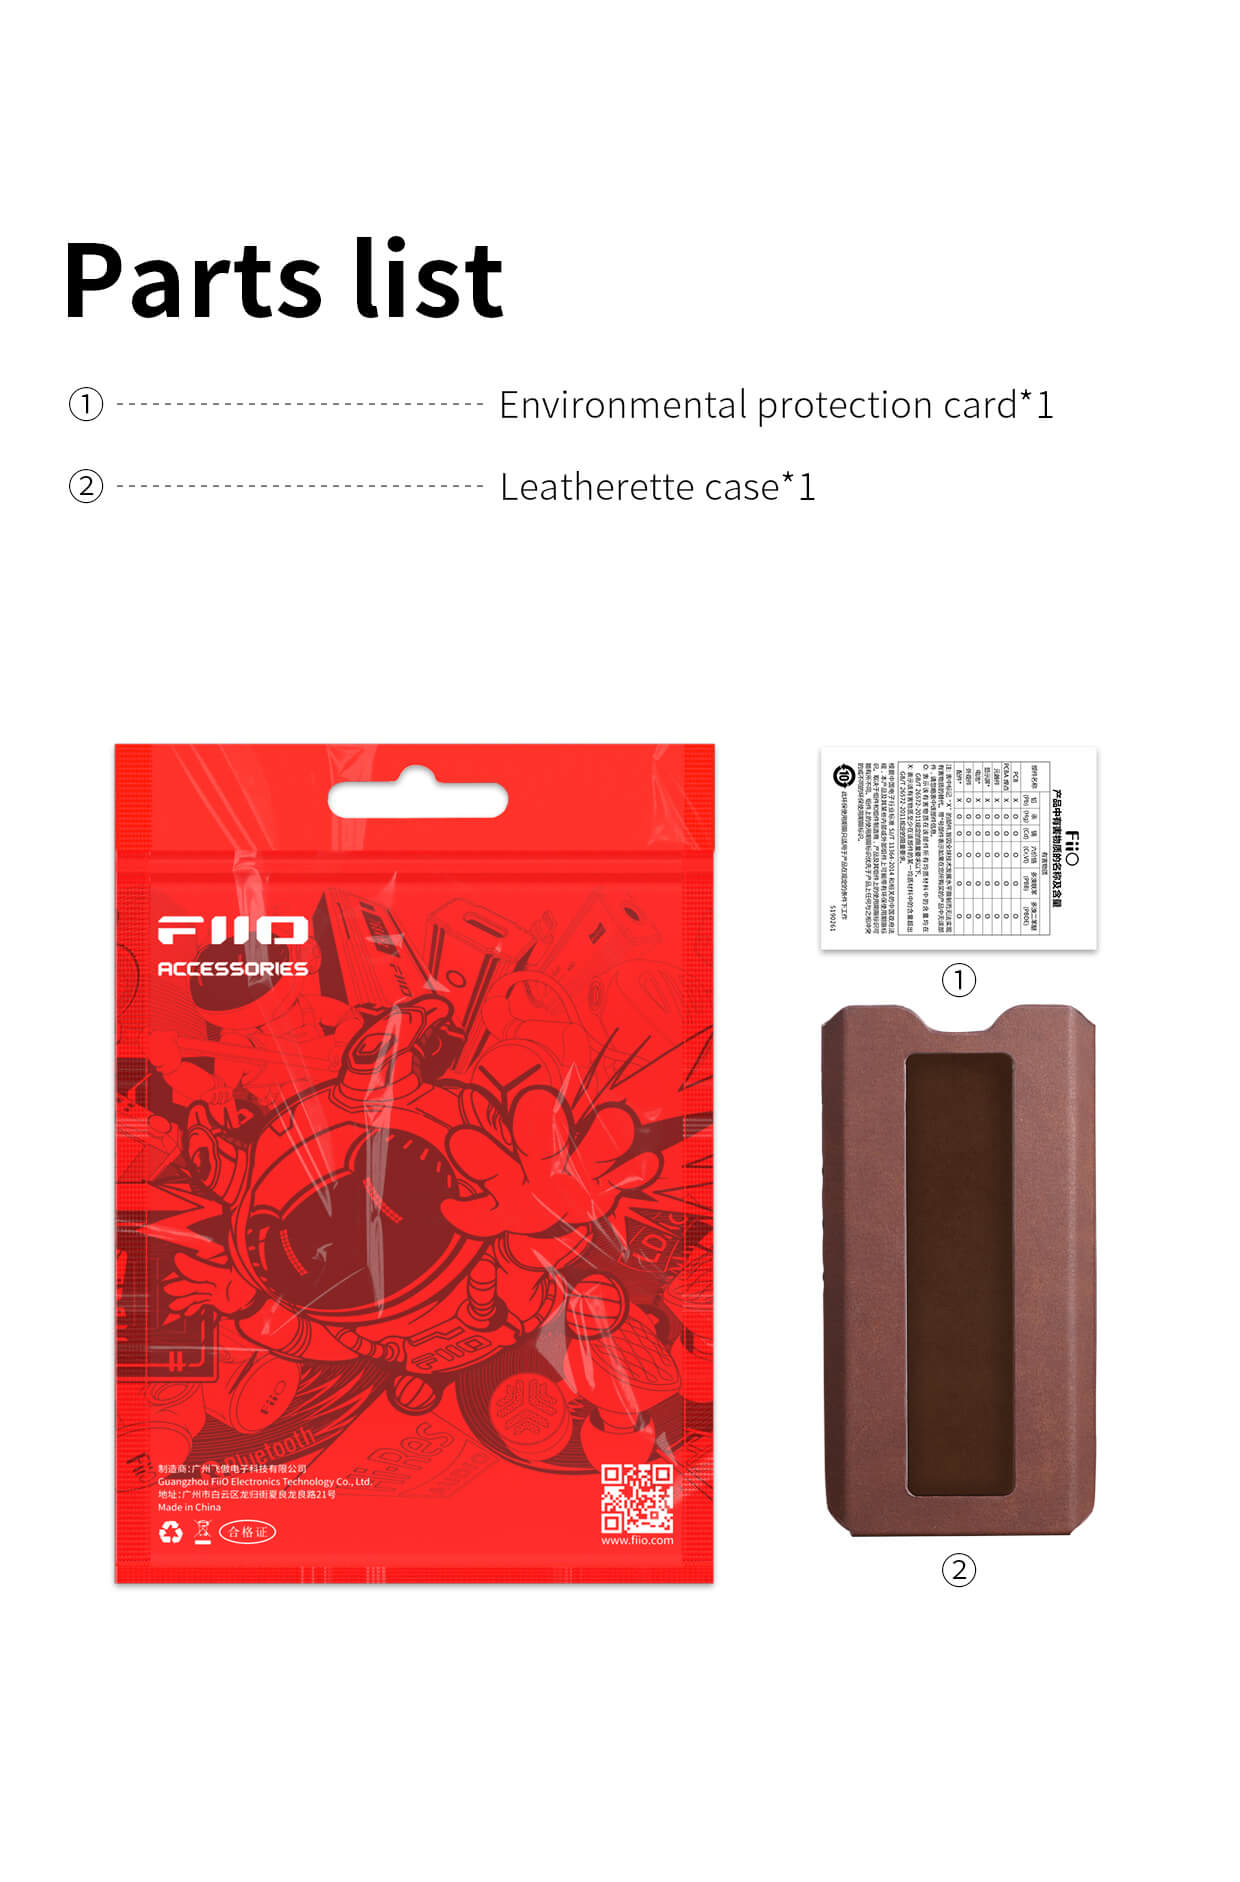 FiiO SK-Q15 | Liste des pièces | Étui en simili-cuir | Carte de protection de l'environnement